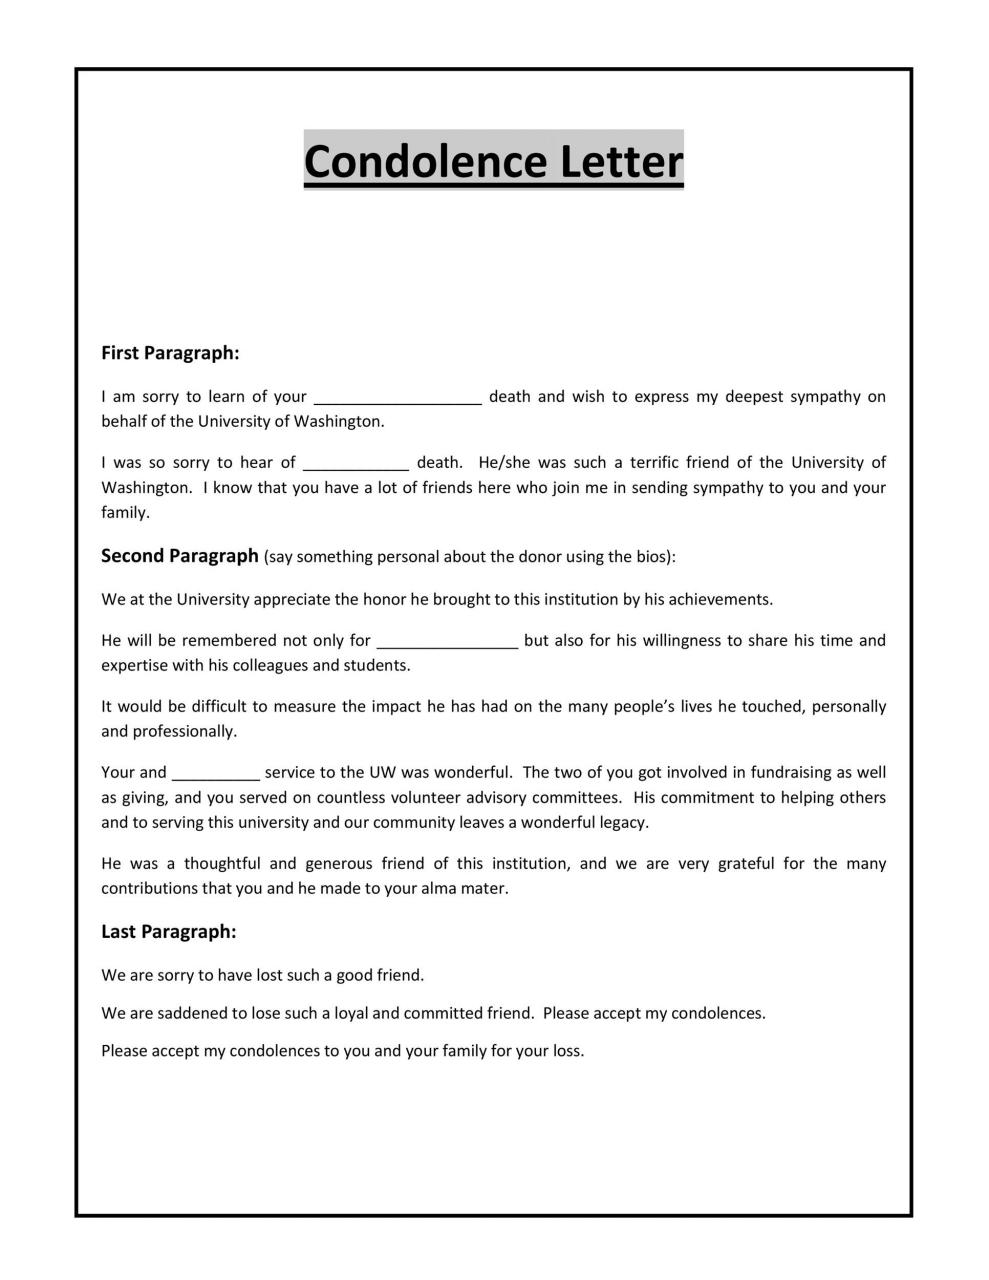 carta de condolencias gratis 04